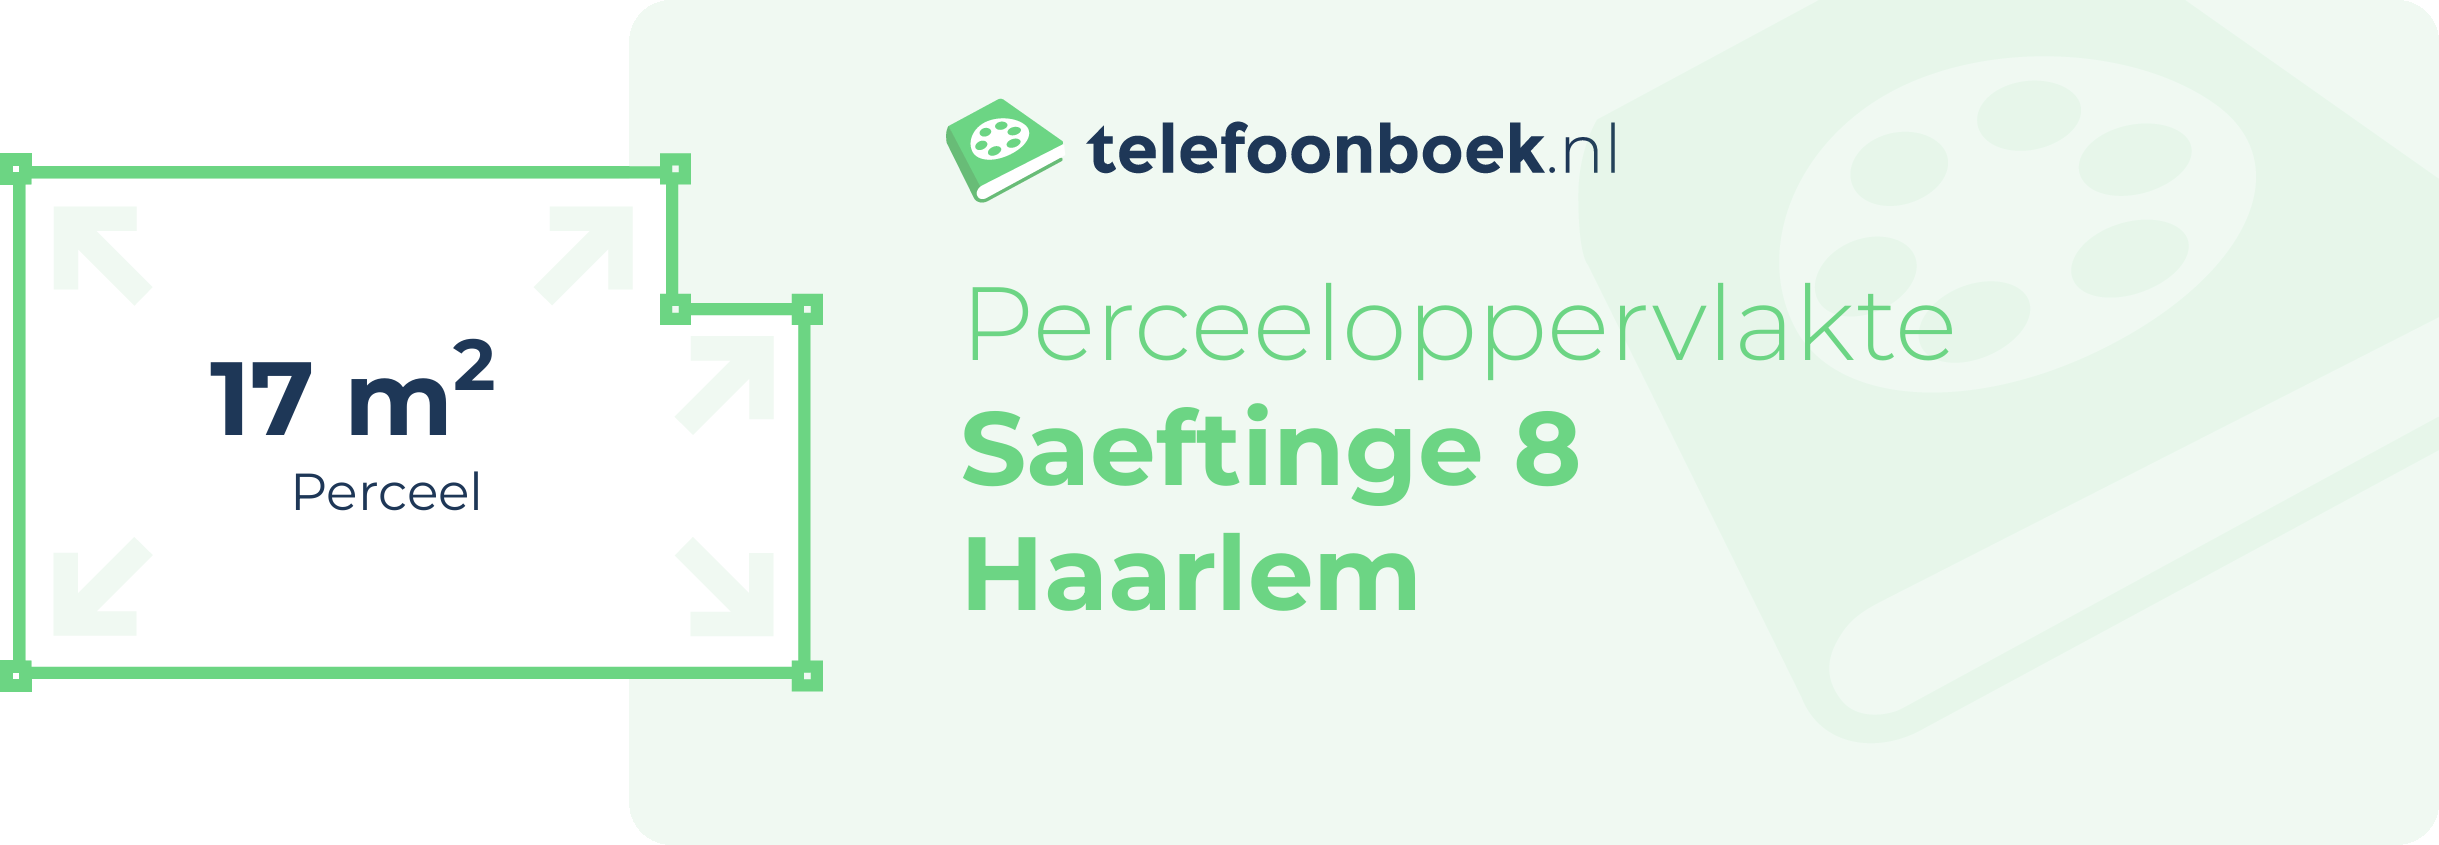 Perceeloppervlakte Saeftinge 8 Haarlem